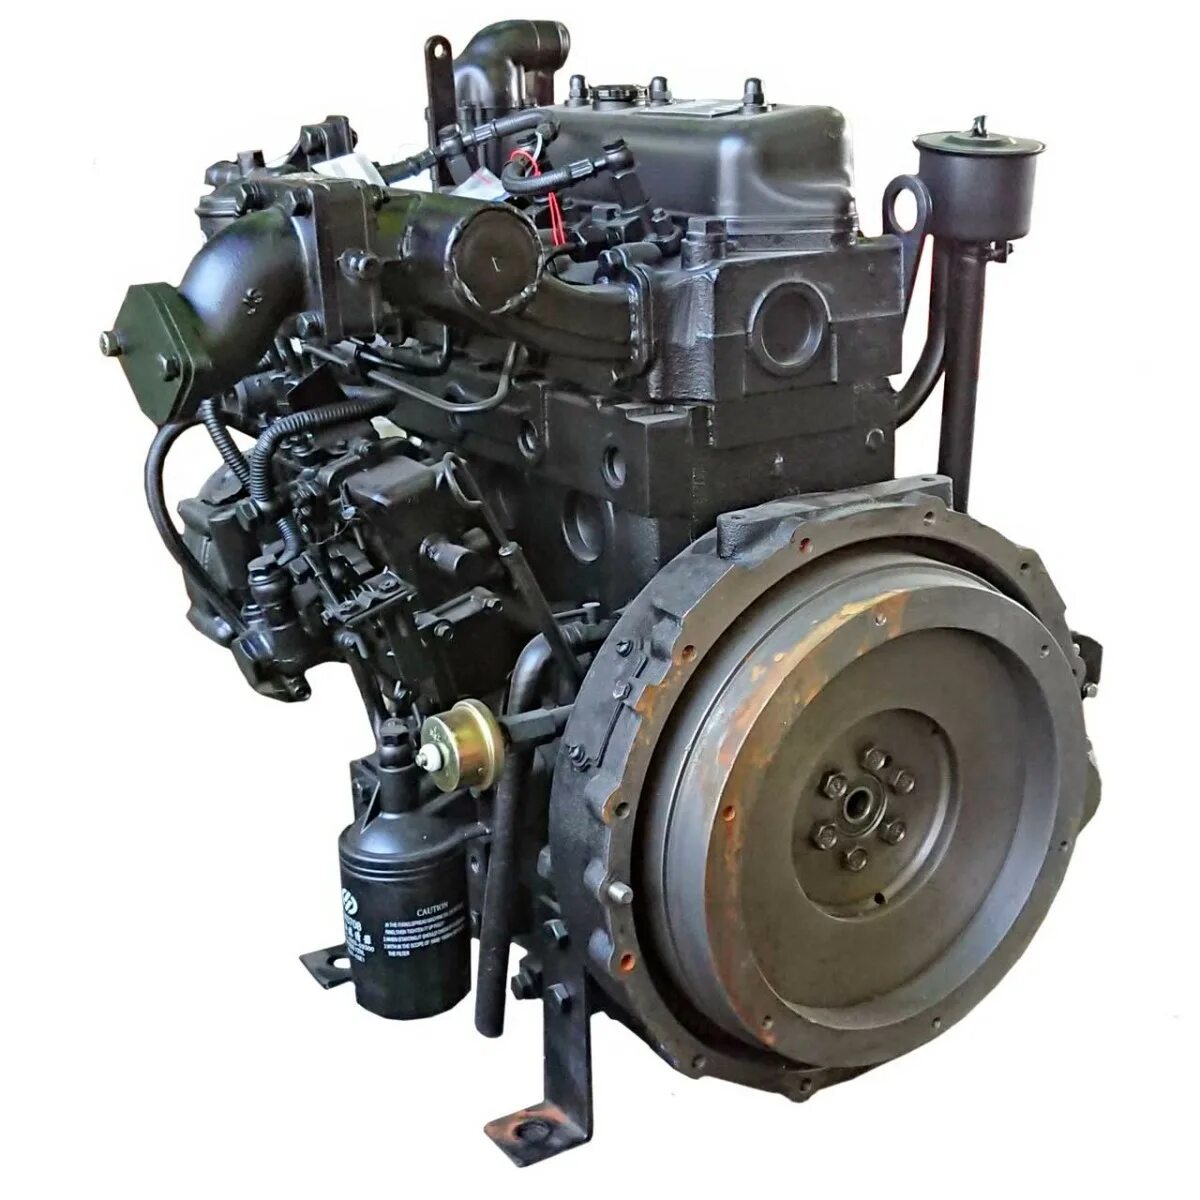 Дизельный двигатель Yangdong yd490d. Двигатель Yangdong yd4ezld. Дизельный двигатель Yangdong yd385d запчасти. Двигатель дизельный r195ndl (15л.с.).